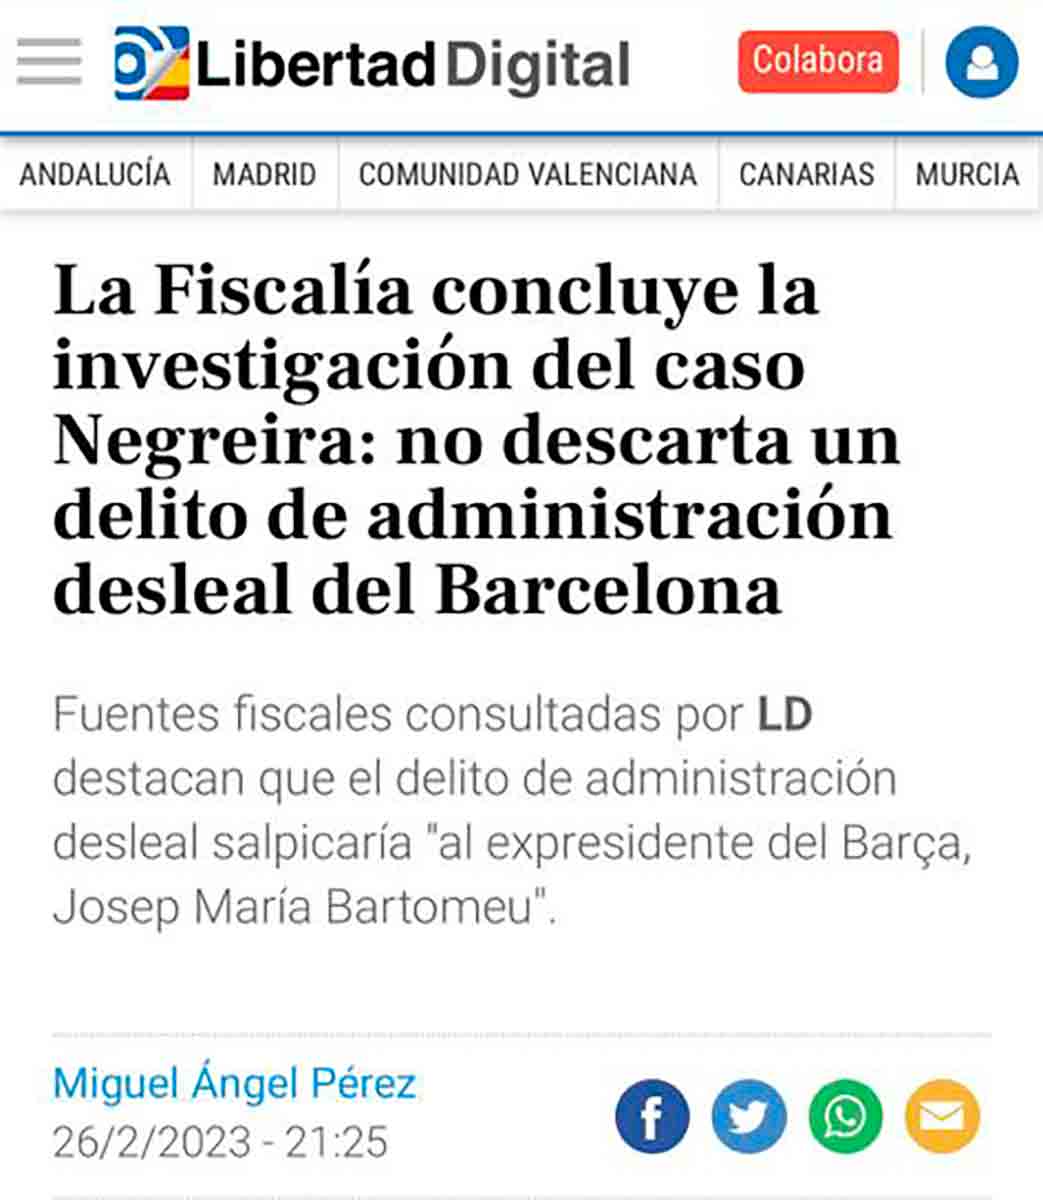 Libertad Digital administración desleal Barça